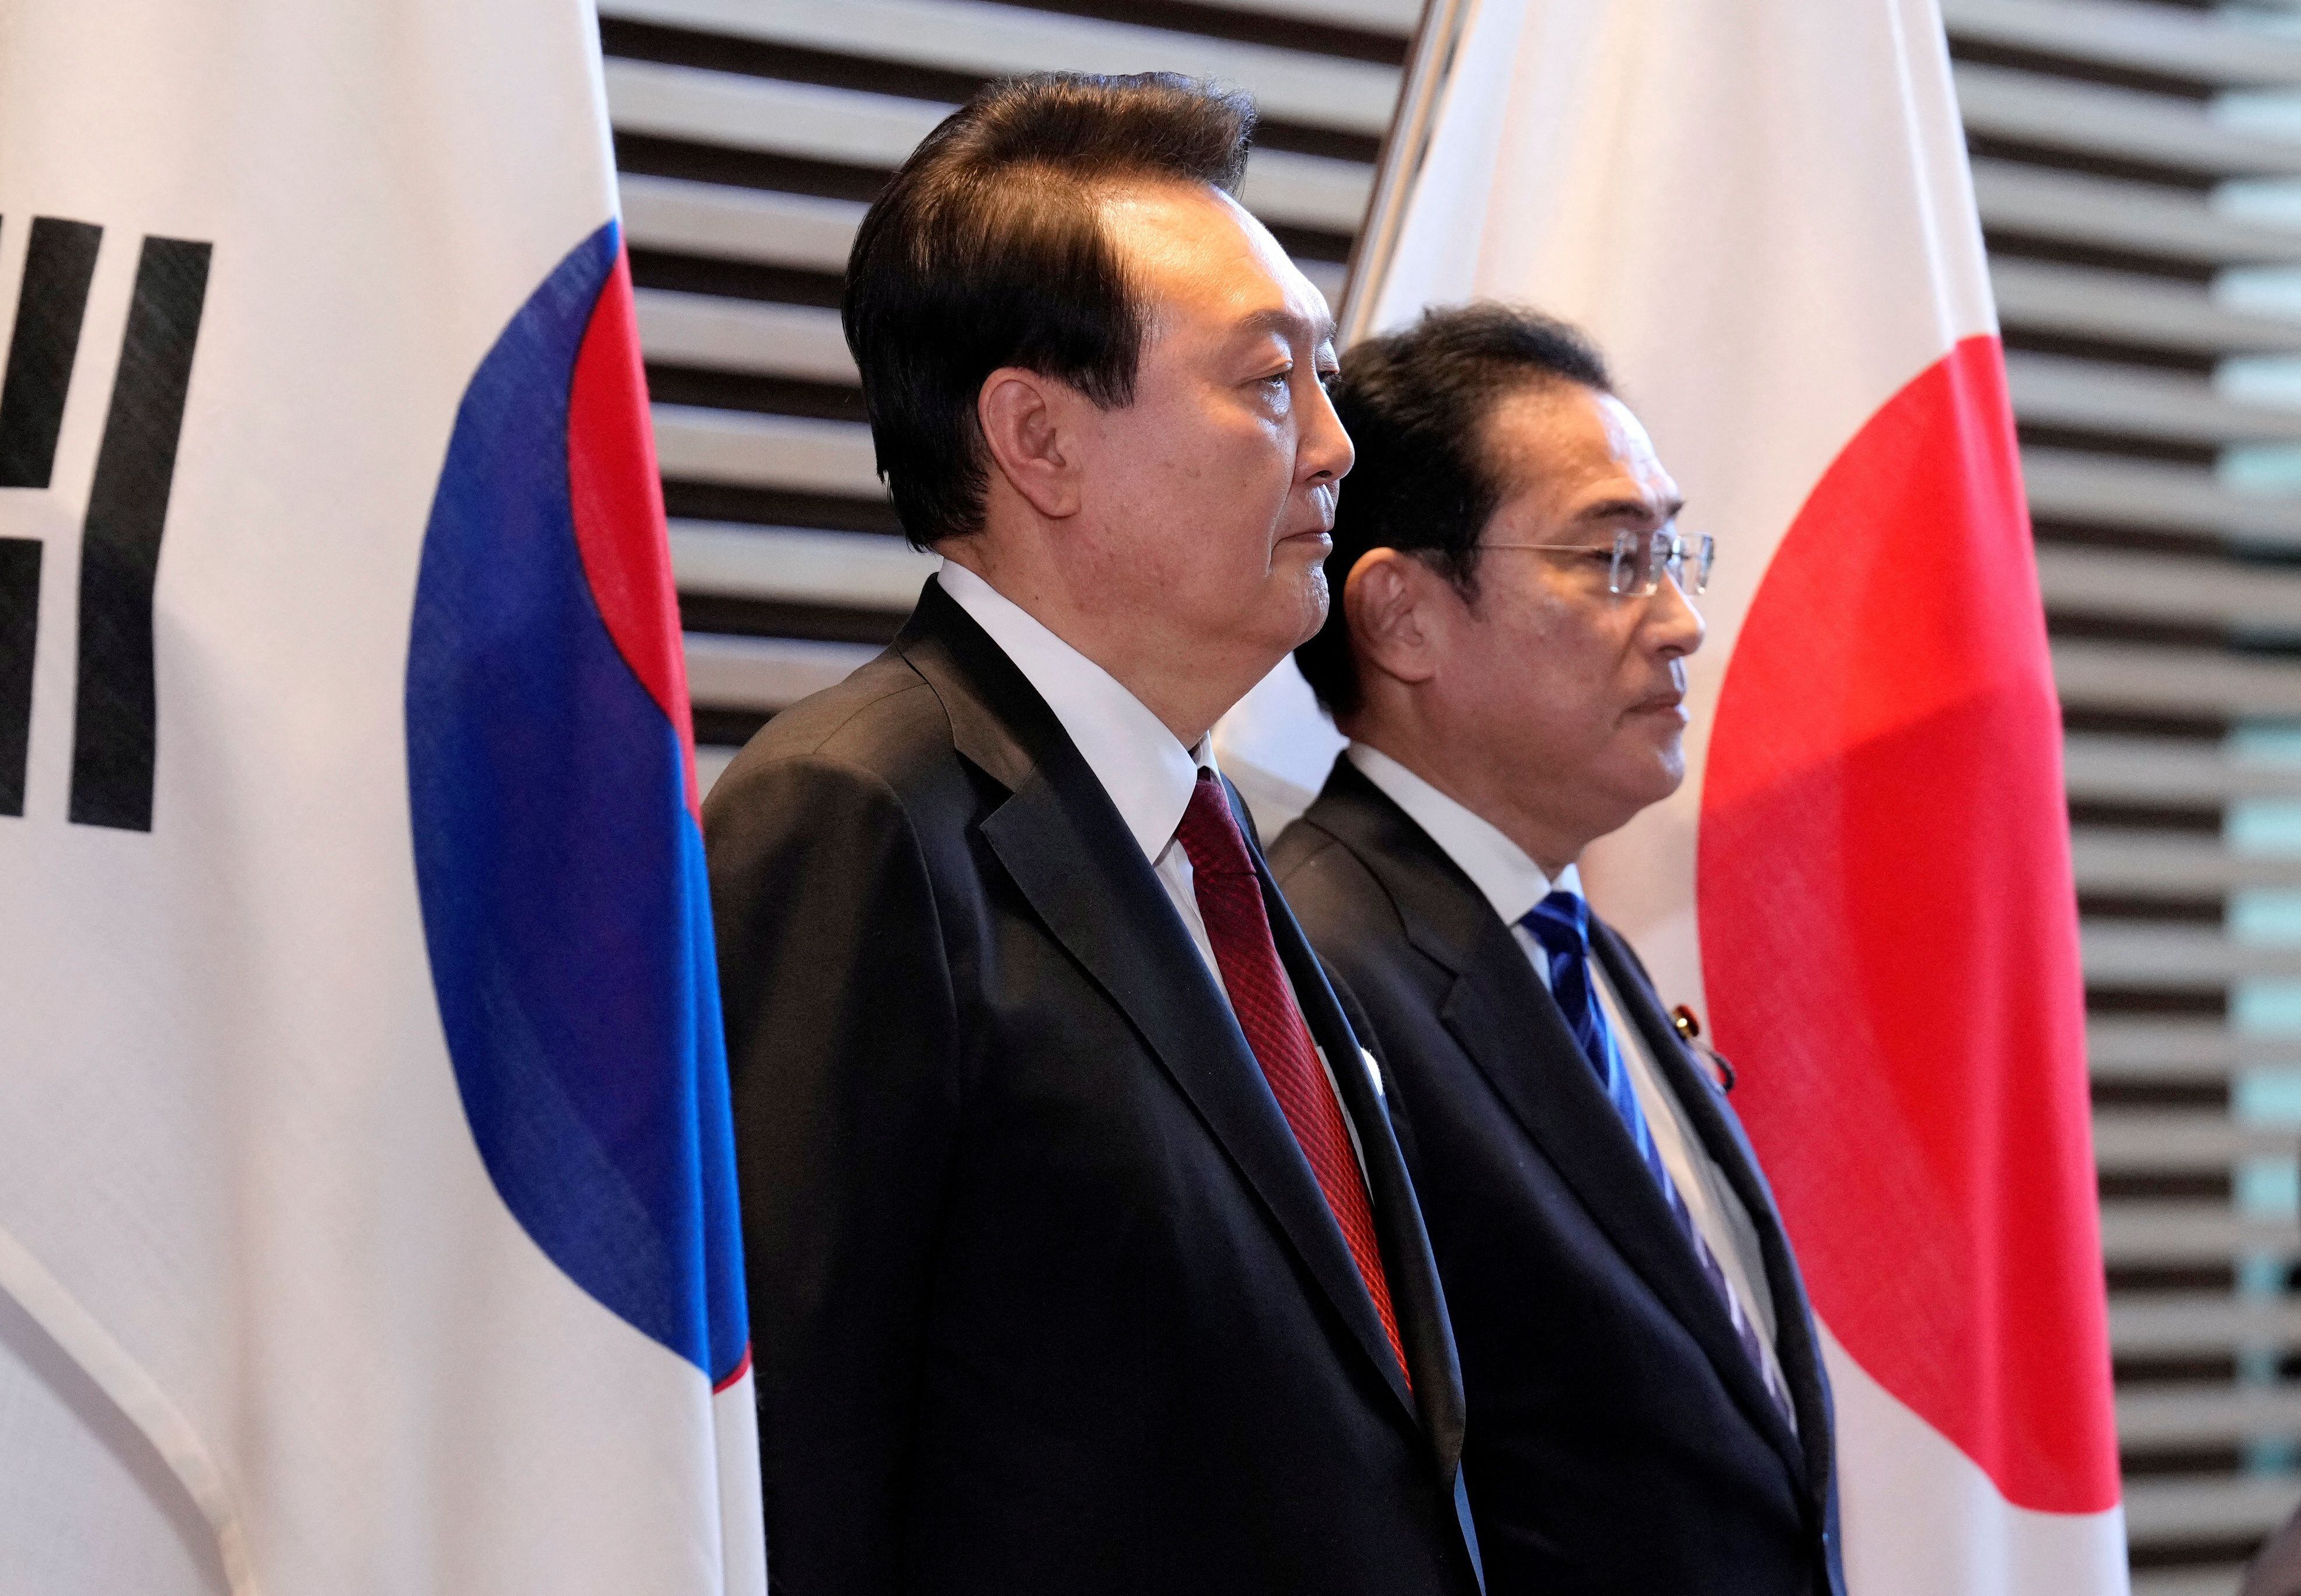 El presidente surcoreano, Yoon Suk Yeol, y el primer ministro japonés, Fumio Kishida. asisten a una ceremonia de guardia de honor antes de su reunión bilateral en la Oficina del Primer Ministro en Tokio, Japón, 16 de marzo de 2023.  FRANCK ROBICHON/Pool vía REUTERS/Archivo